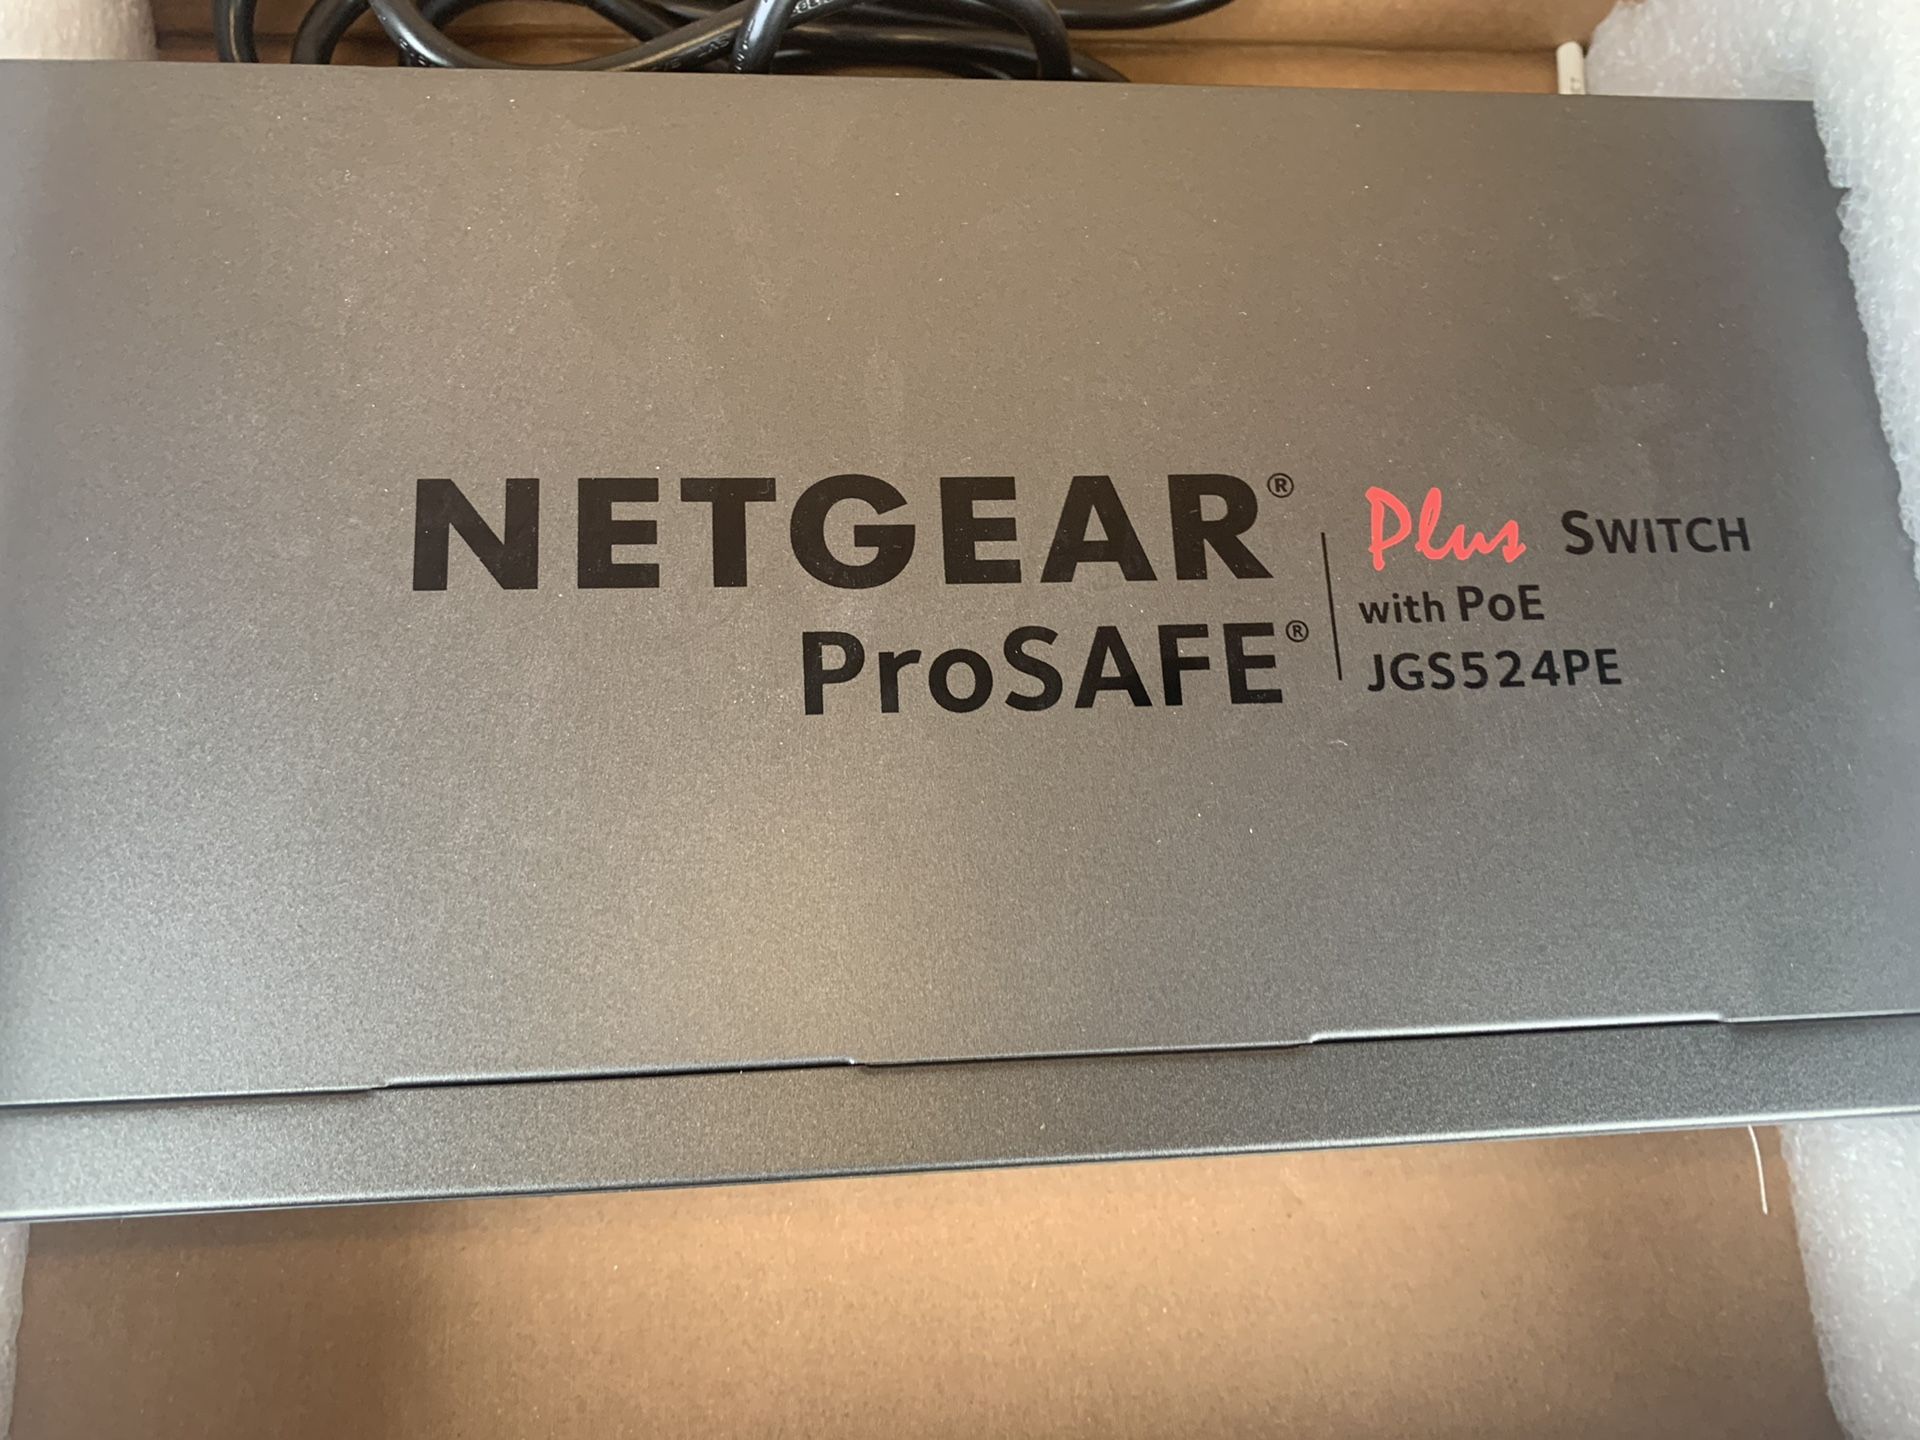 Netgear 24 port poe switch JGS524PE